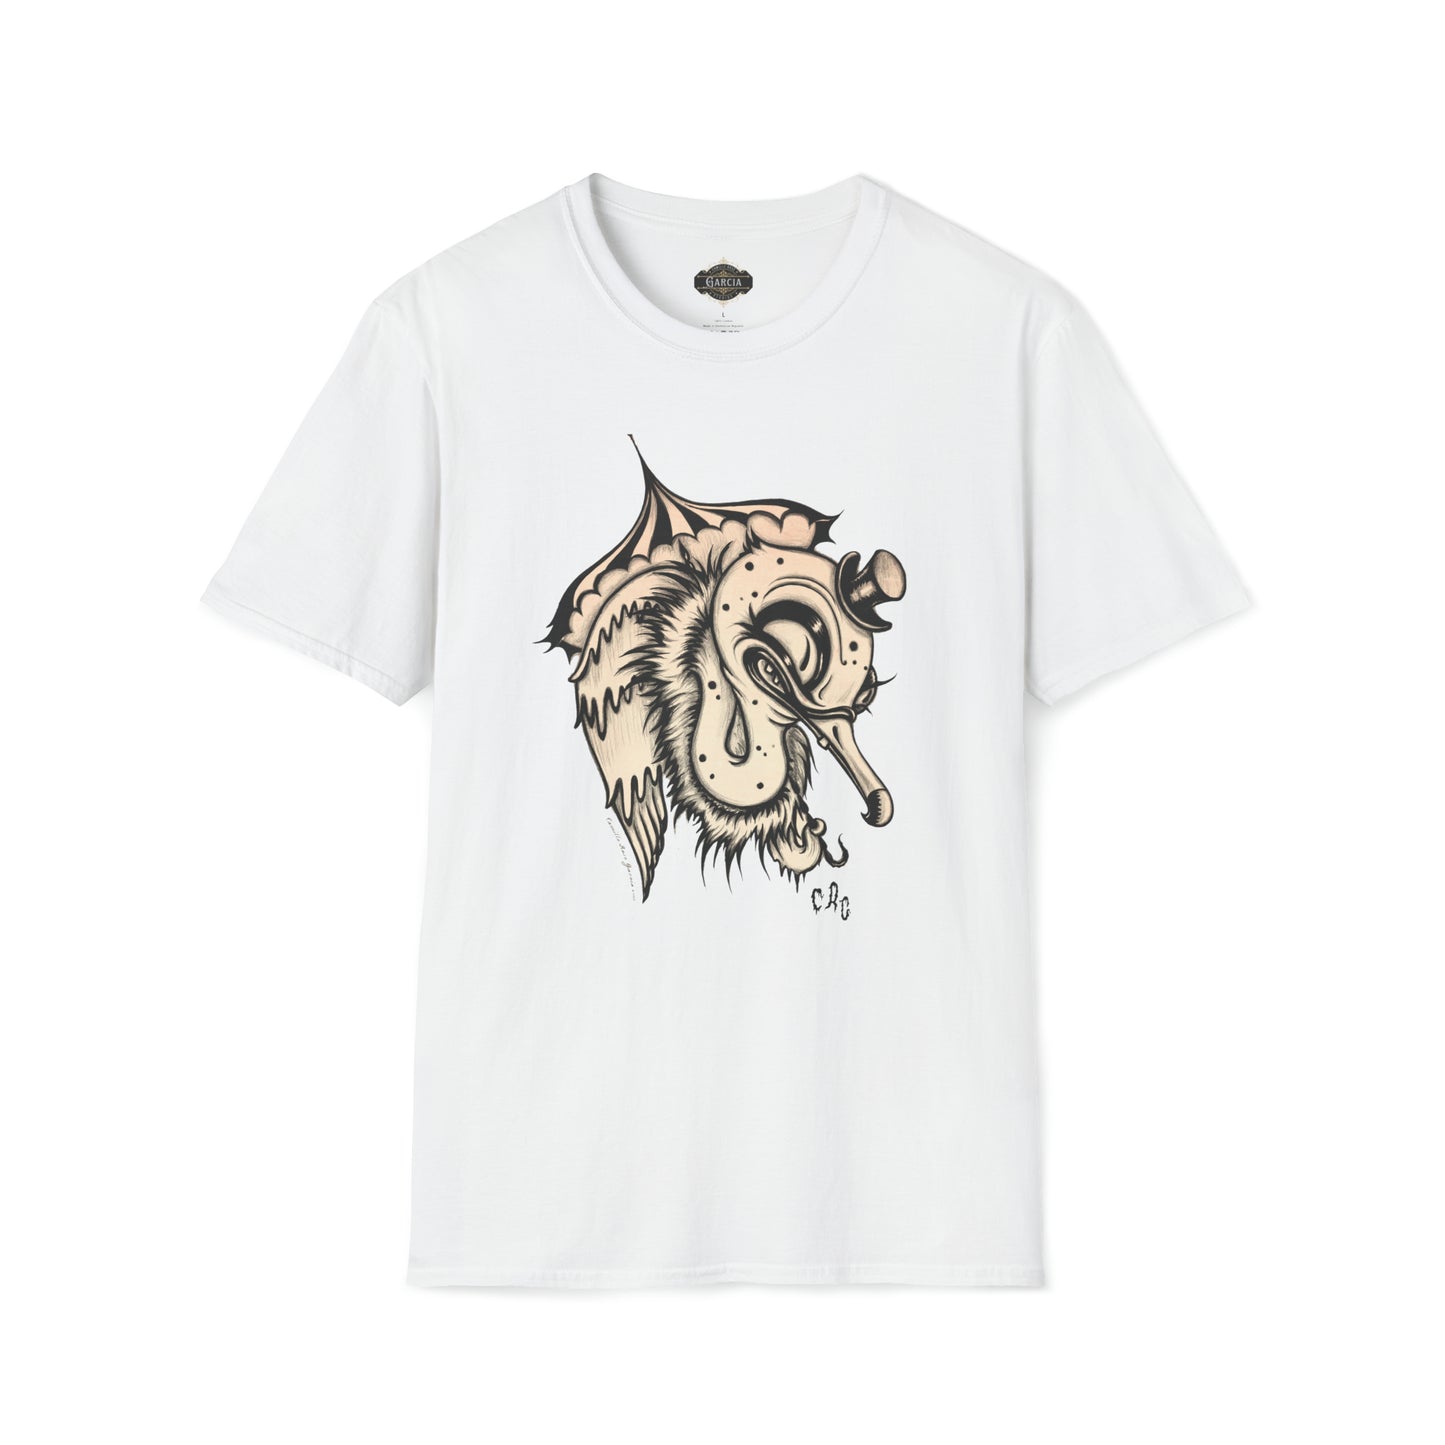 "Vulture Love" Unisex T-Shirt